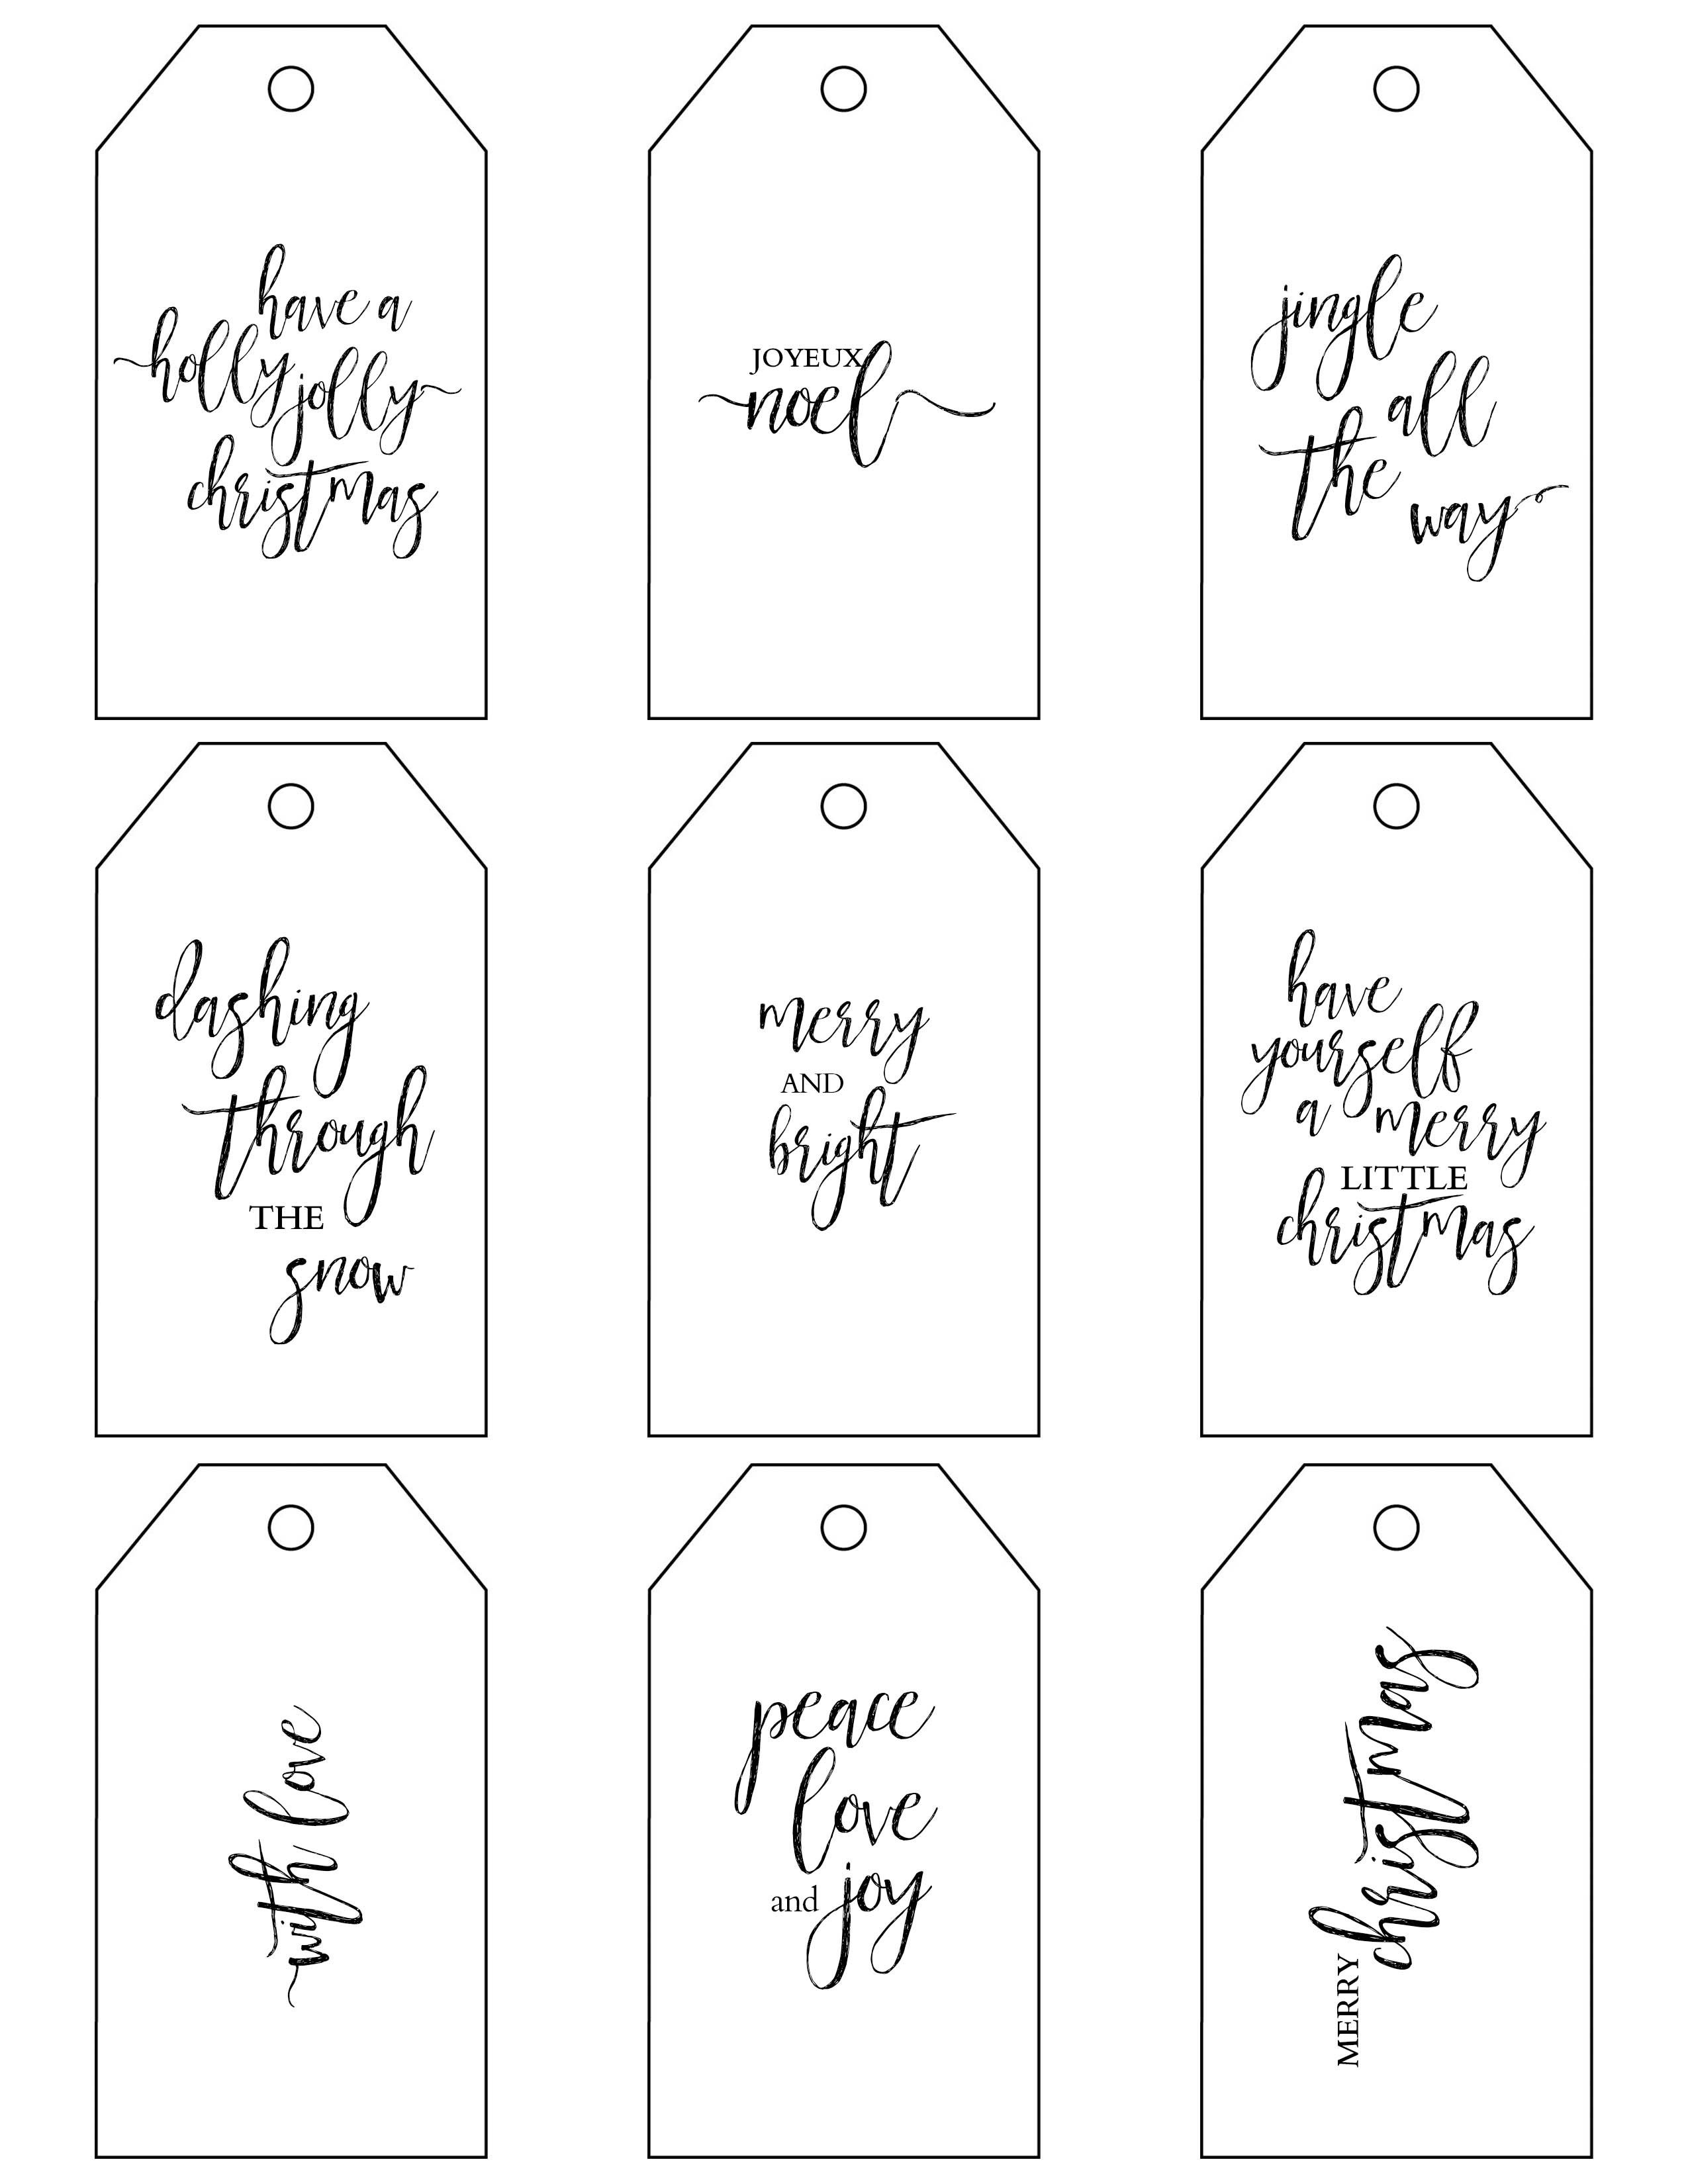 Printable Christmas Gift Tags Make Holiday Wrapping Simple - Christmas Gift Tags Free Printable Black And White